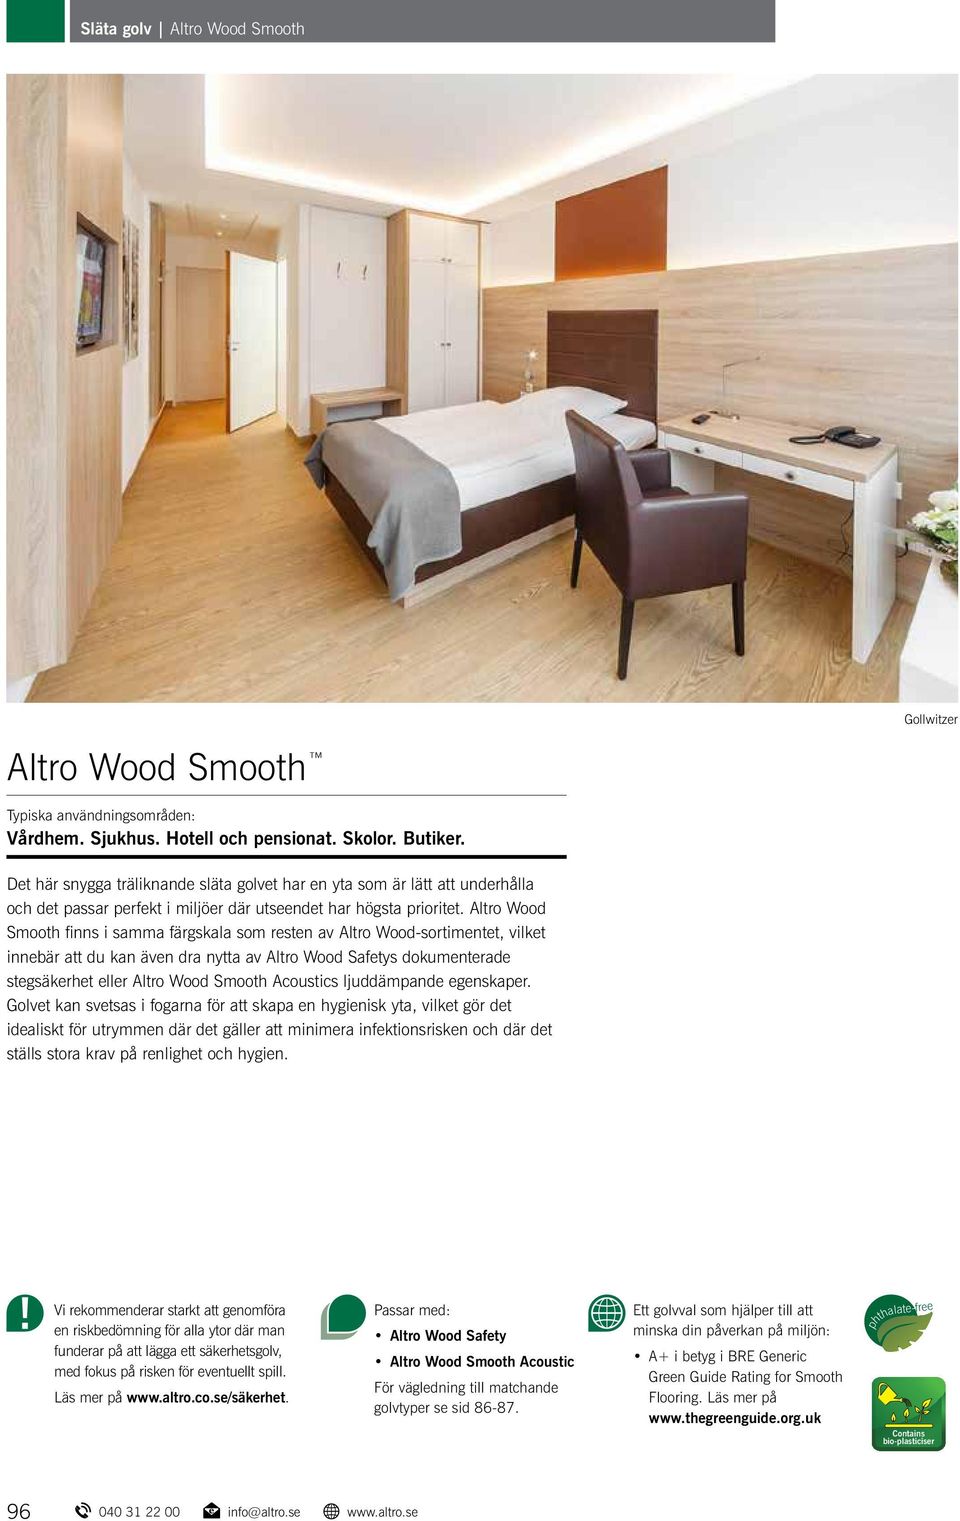 Altro Wood Smooth finns i samma färgskala som resten av Altro Wood-sortimentet, vilket innebär att du kan även dra nytta av Altro Wood Safetys dokumenterade stegsäkerhet eller Altro Wood Smooth